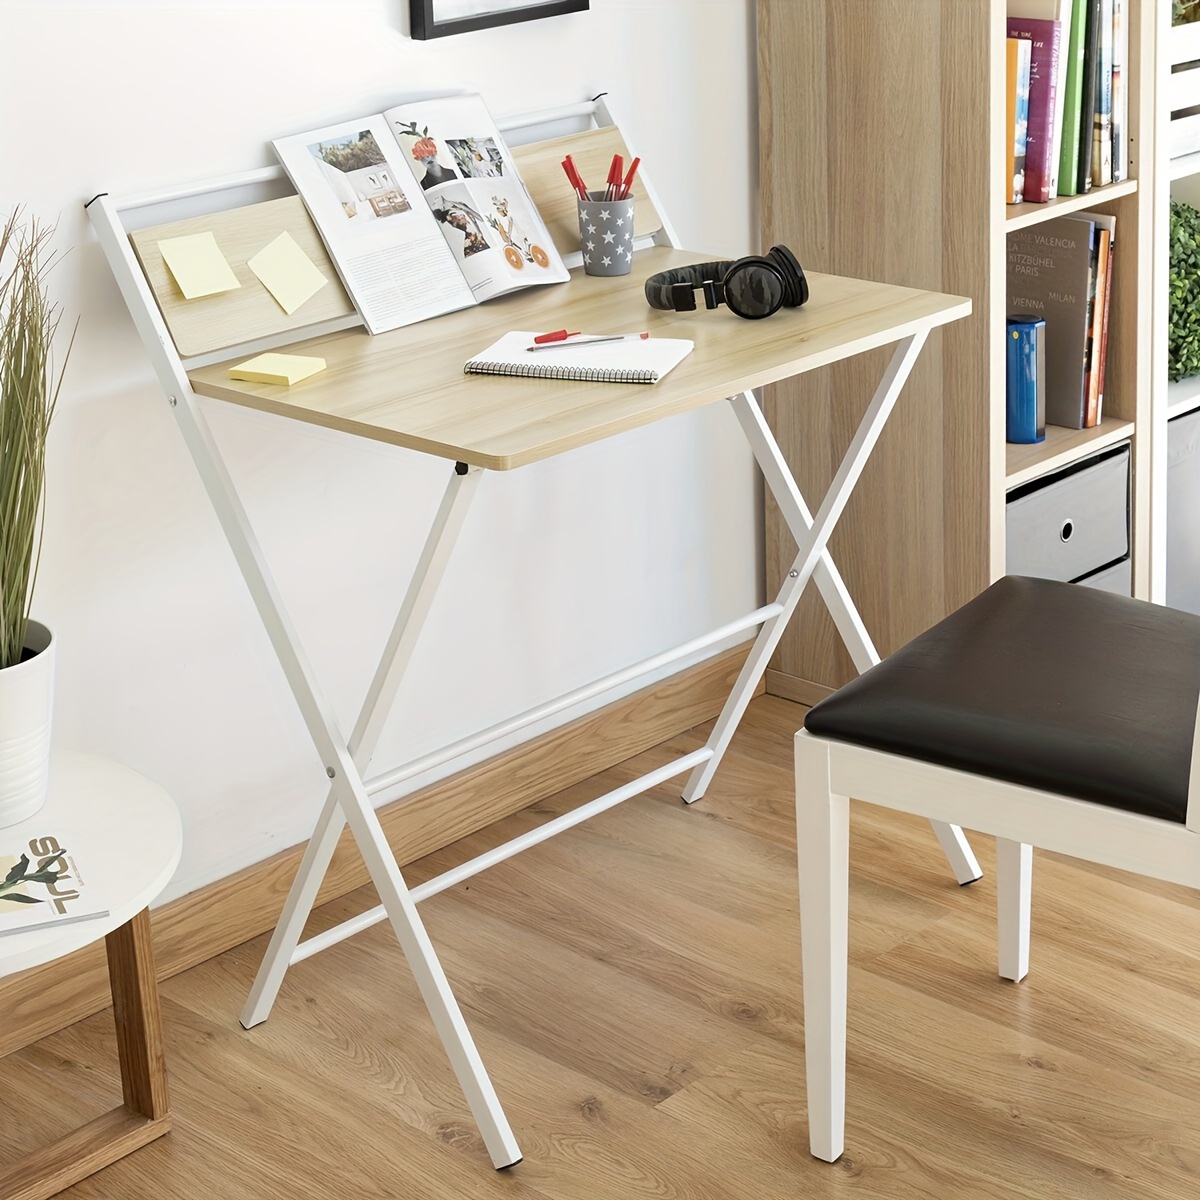  Mesa plegable montada en la pared que ahorra espacio,  escritorio flotante para espacios pequeños en la pared, mesa de comedor  plegable, escritorios plegables para espacios pequeños, mesa de comedor de  moda (